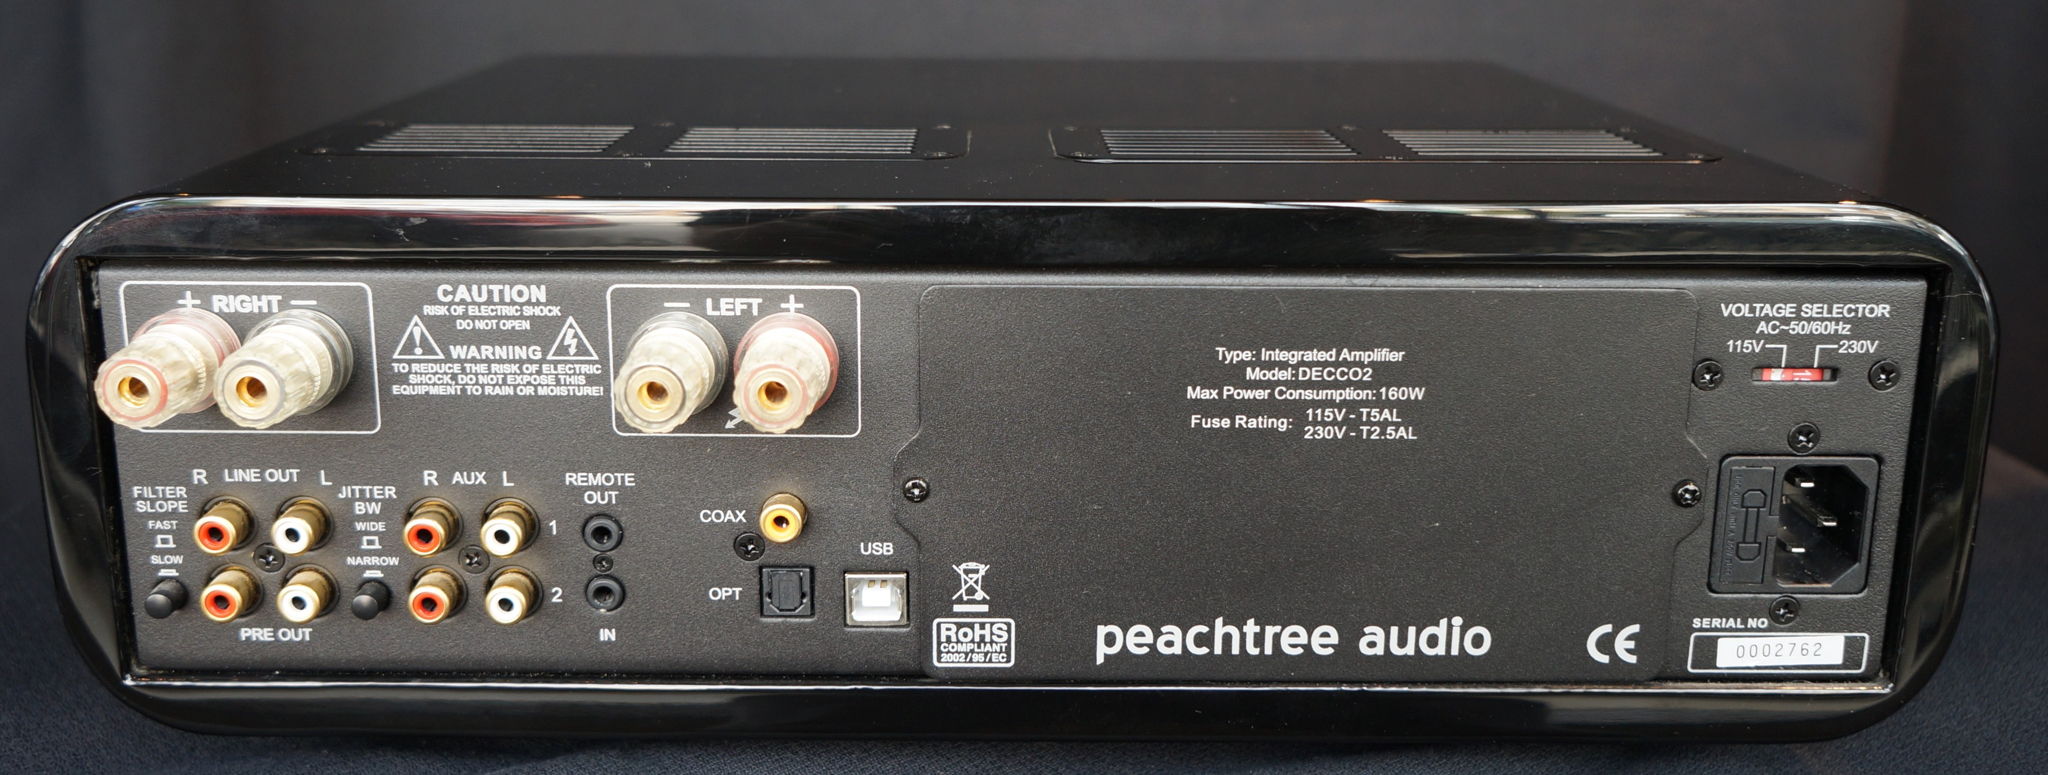 Peachtree Audio Decco2 6